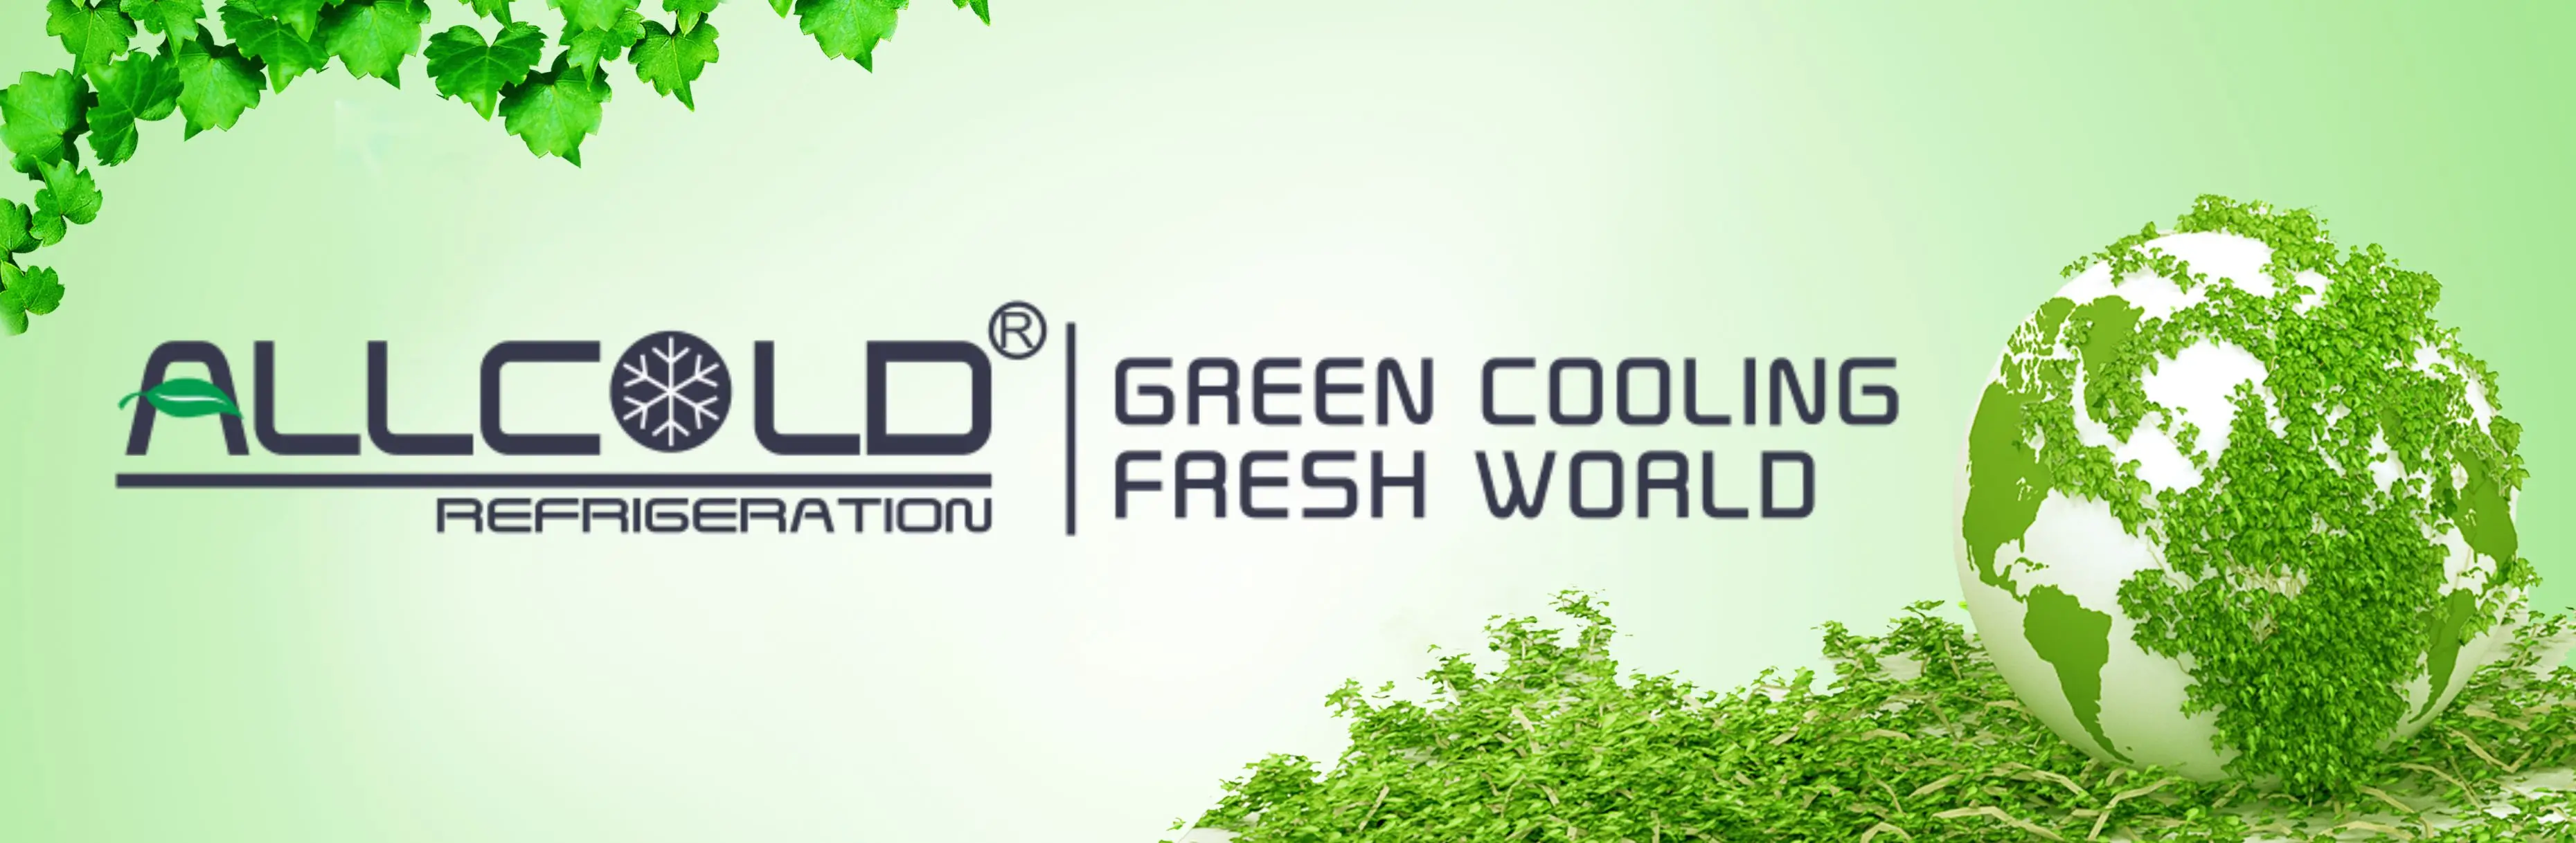 녹색 냉각  통증은 300개 킬로그램 /Vacuum 냉각 기관을 운영합니다